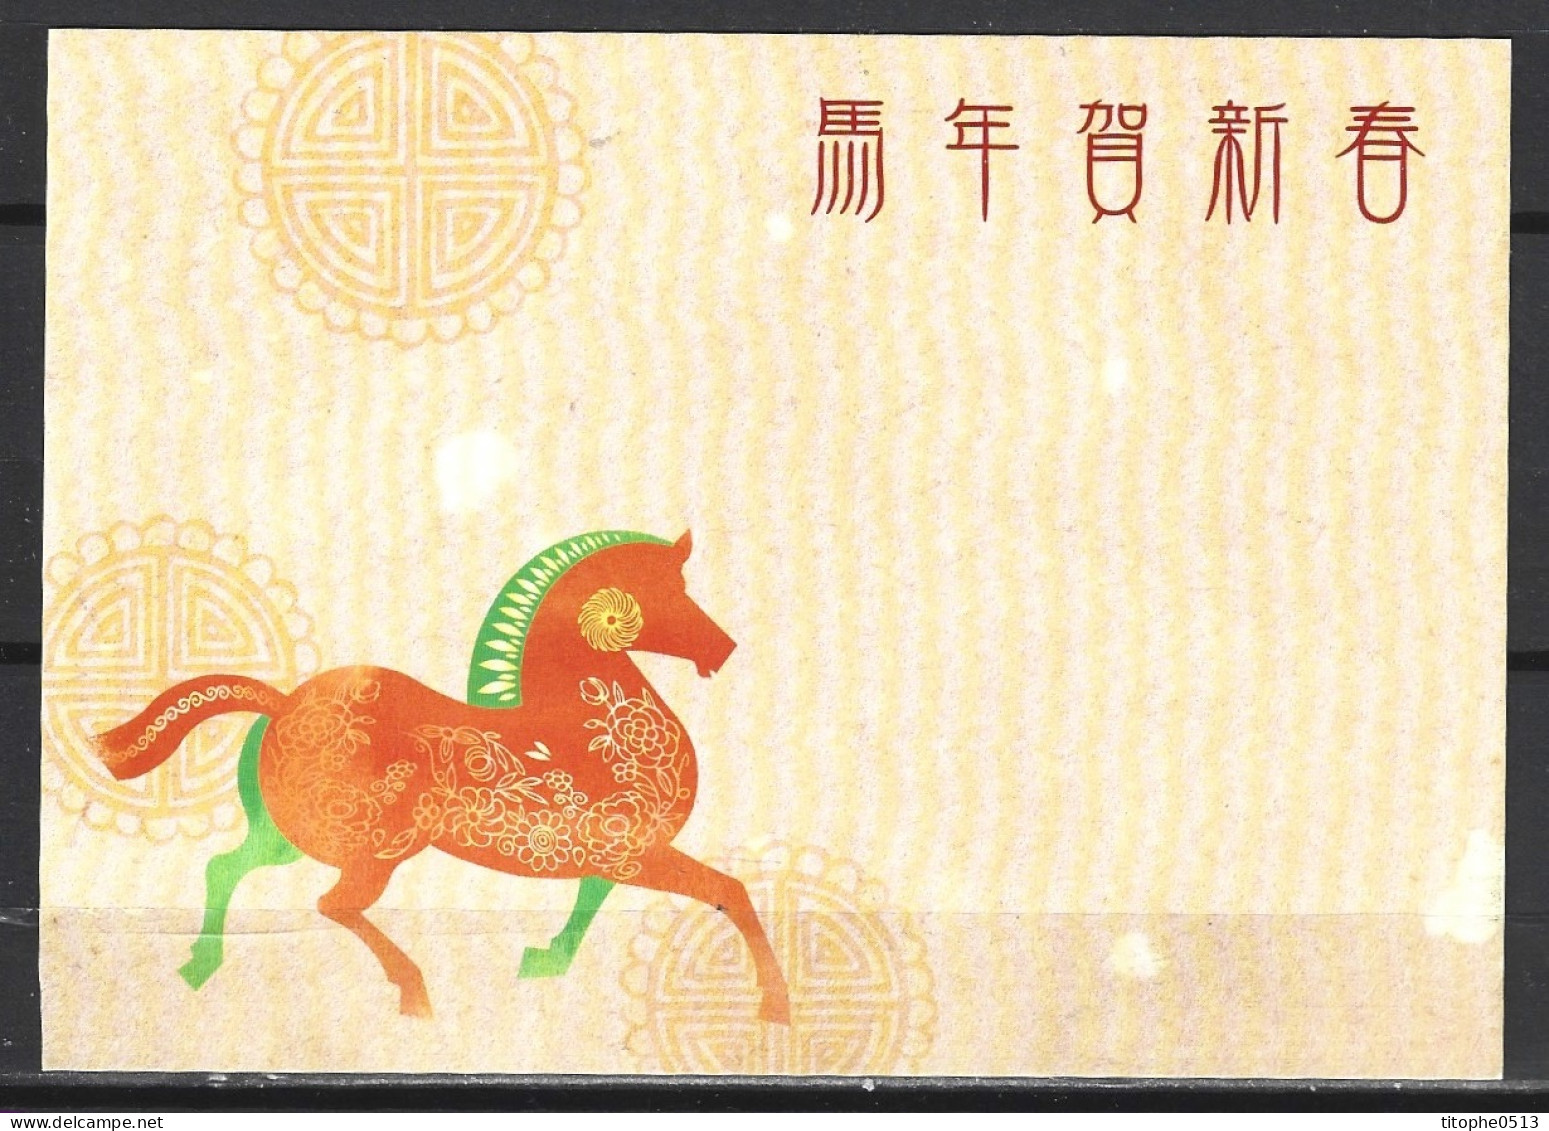 TAIWAN. Carte Pré-timbrée De 2013. Année Du Cheval. - Chinese New Year